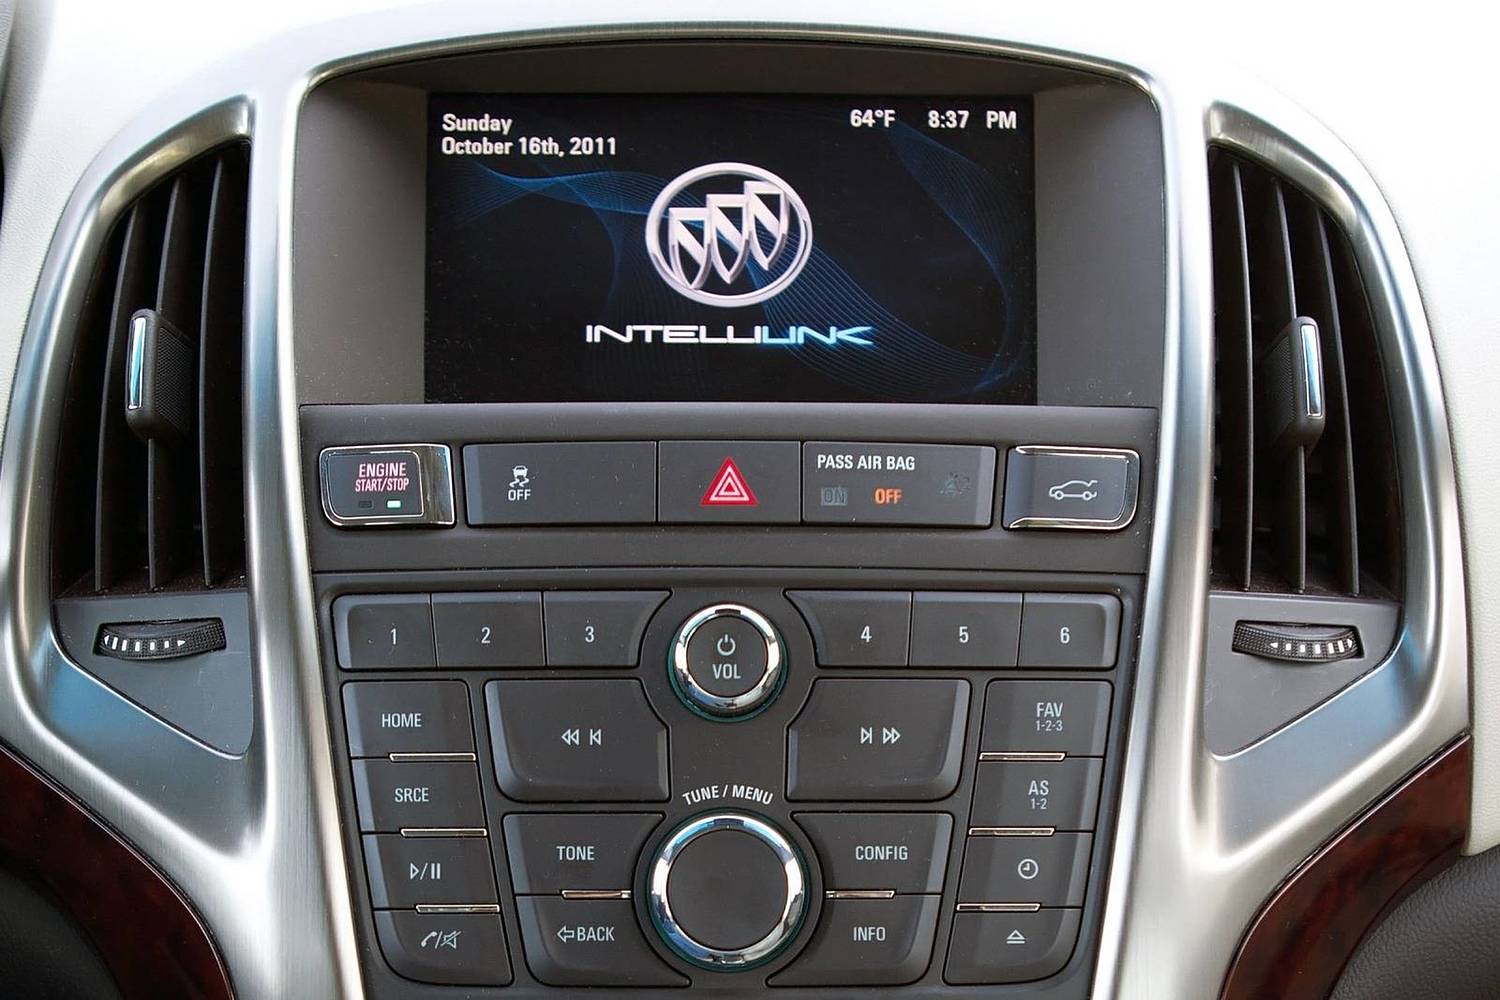 Buick Verano Sedan Center Console (2013 model year shown)